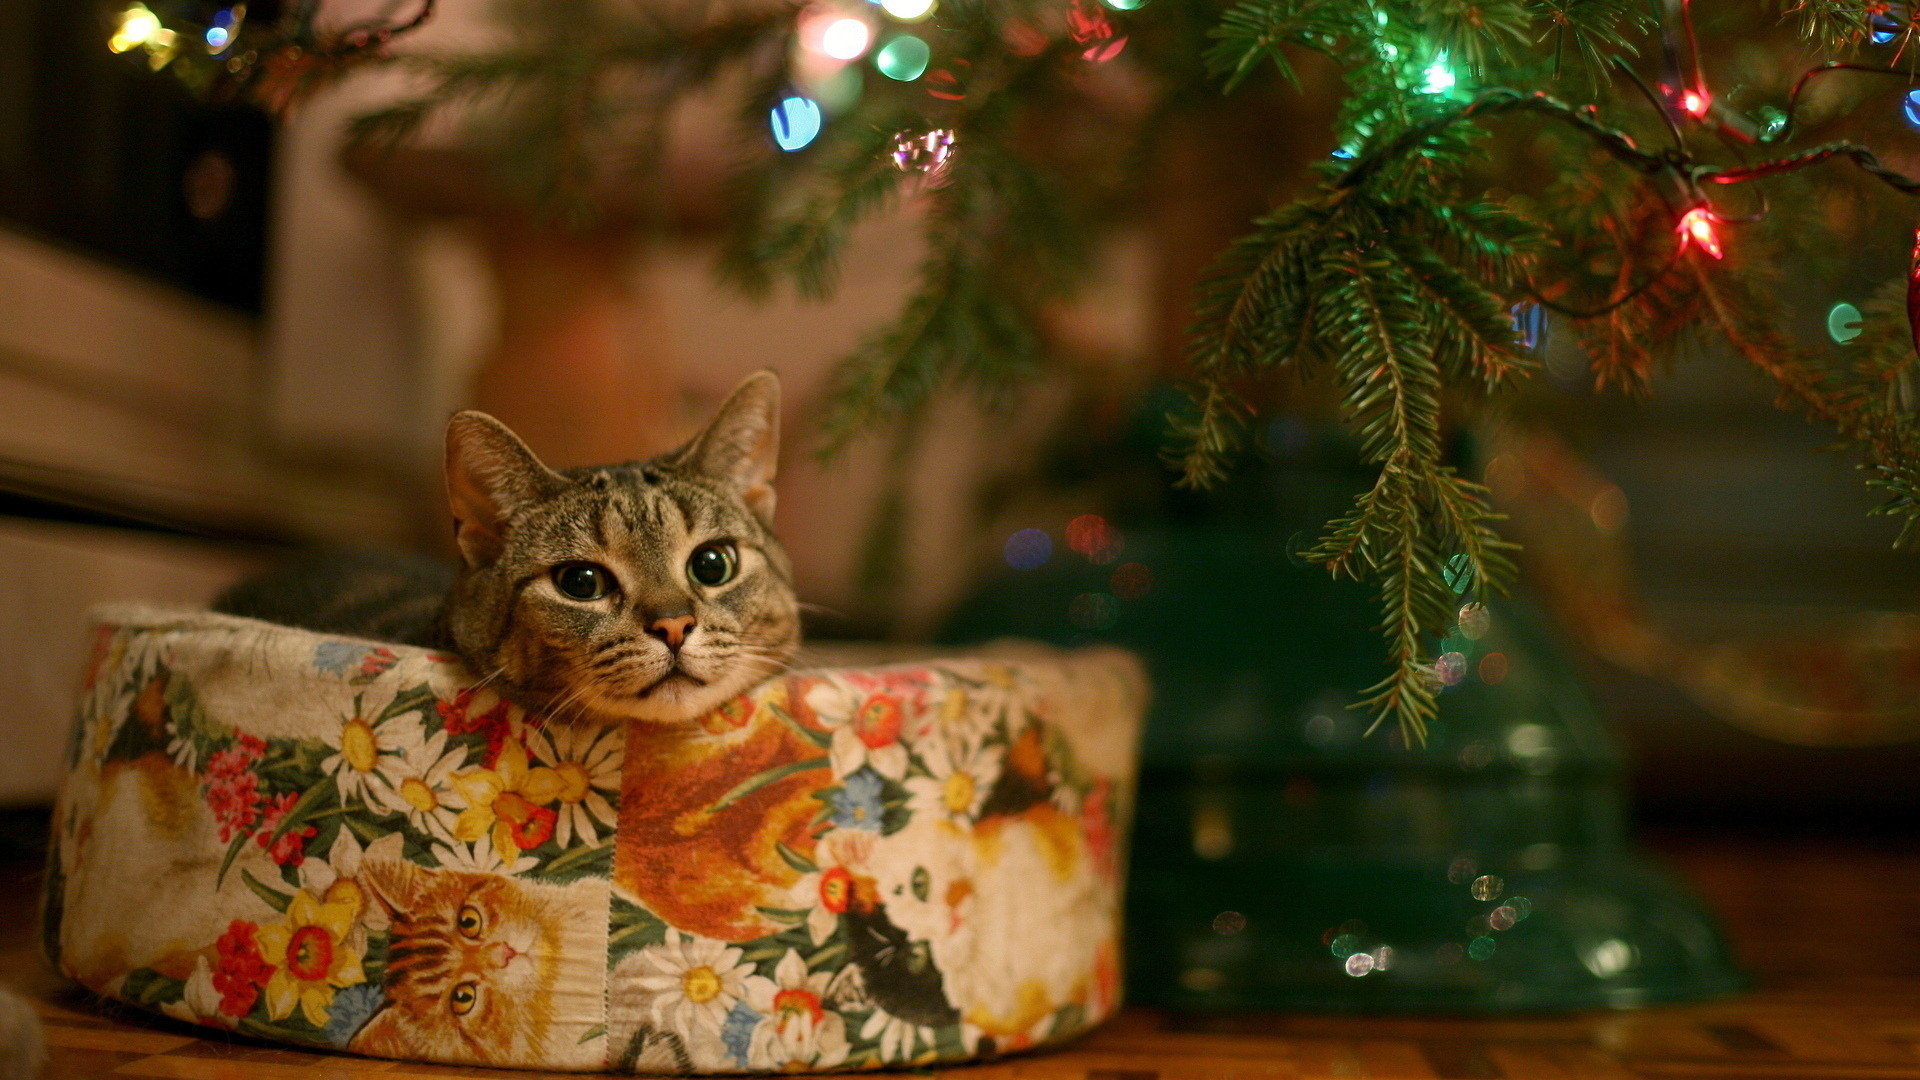 1920x1080 Cute christmas cat, Full HD, 1080p, wallpaper, 1920Ã1080